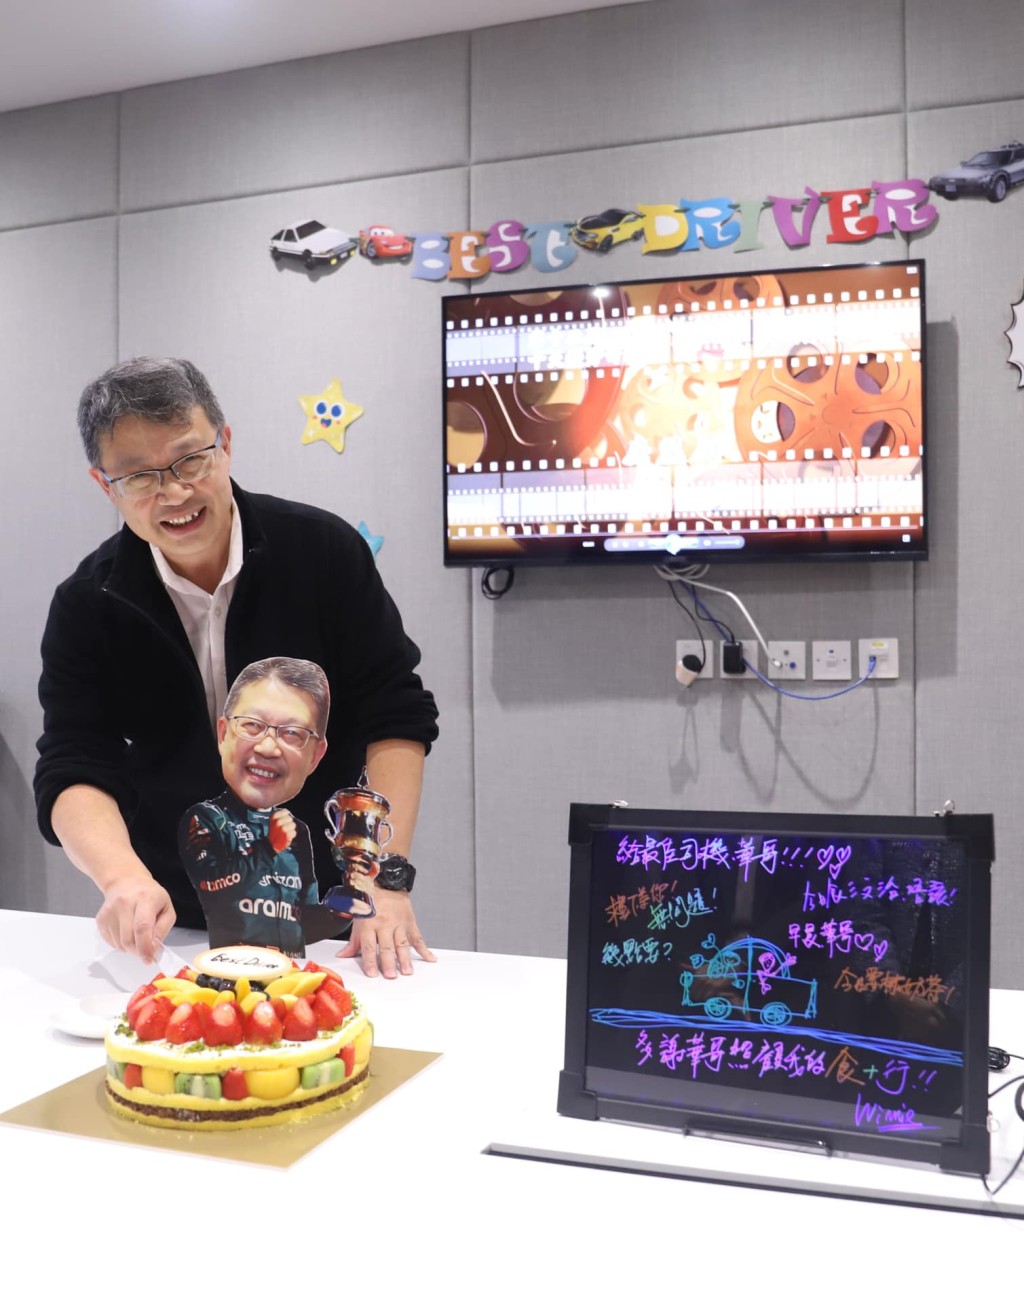 房屋局為華哥獲「十大司機」嘉許，舉行慶祝派對。何永賢facebook圖片